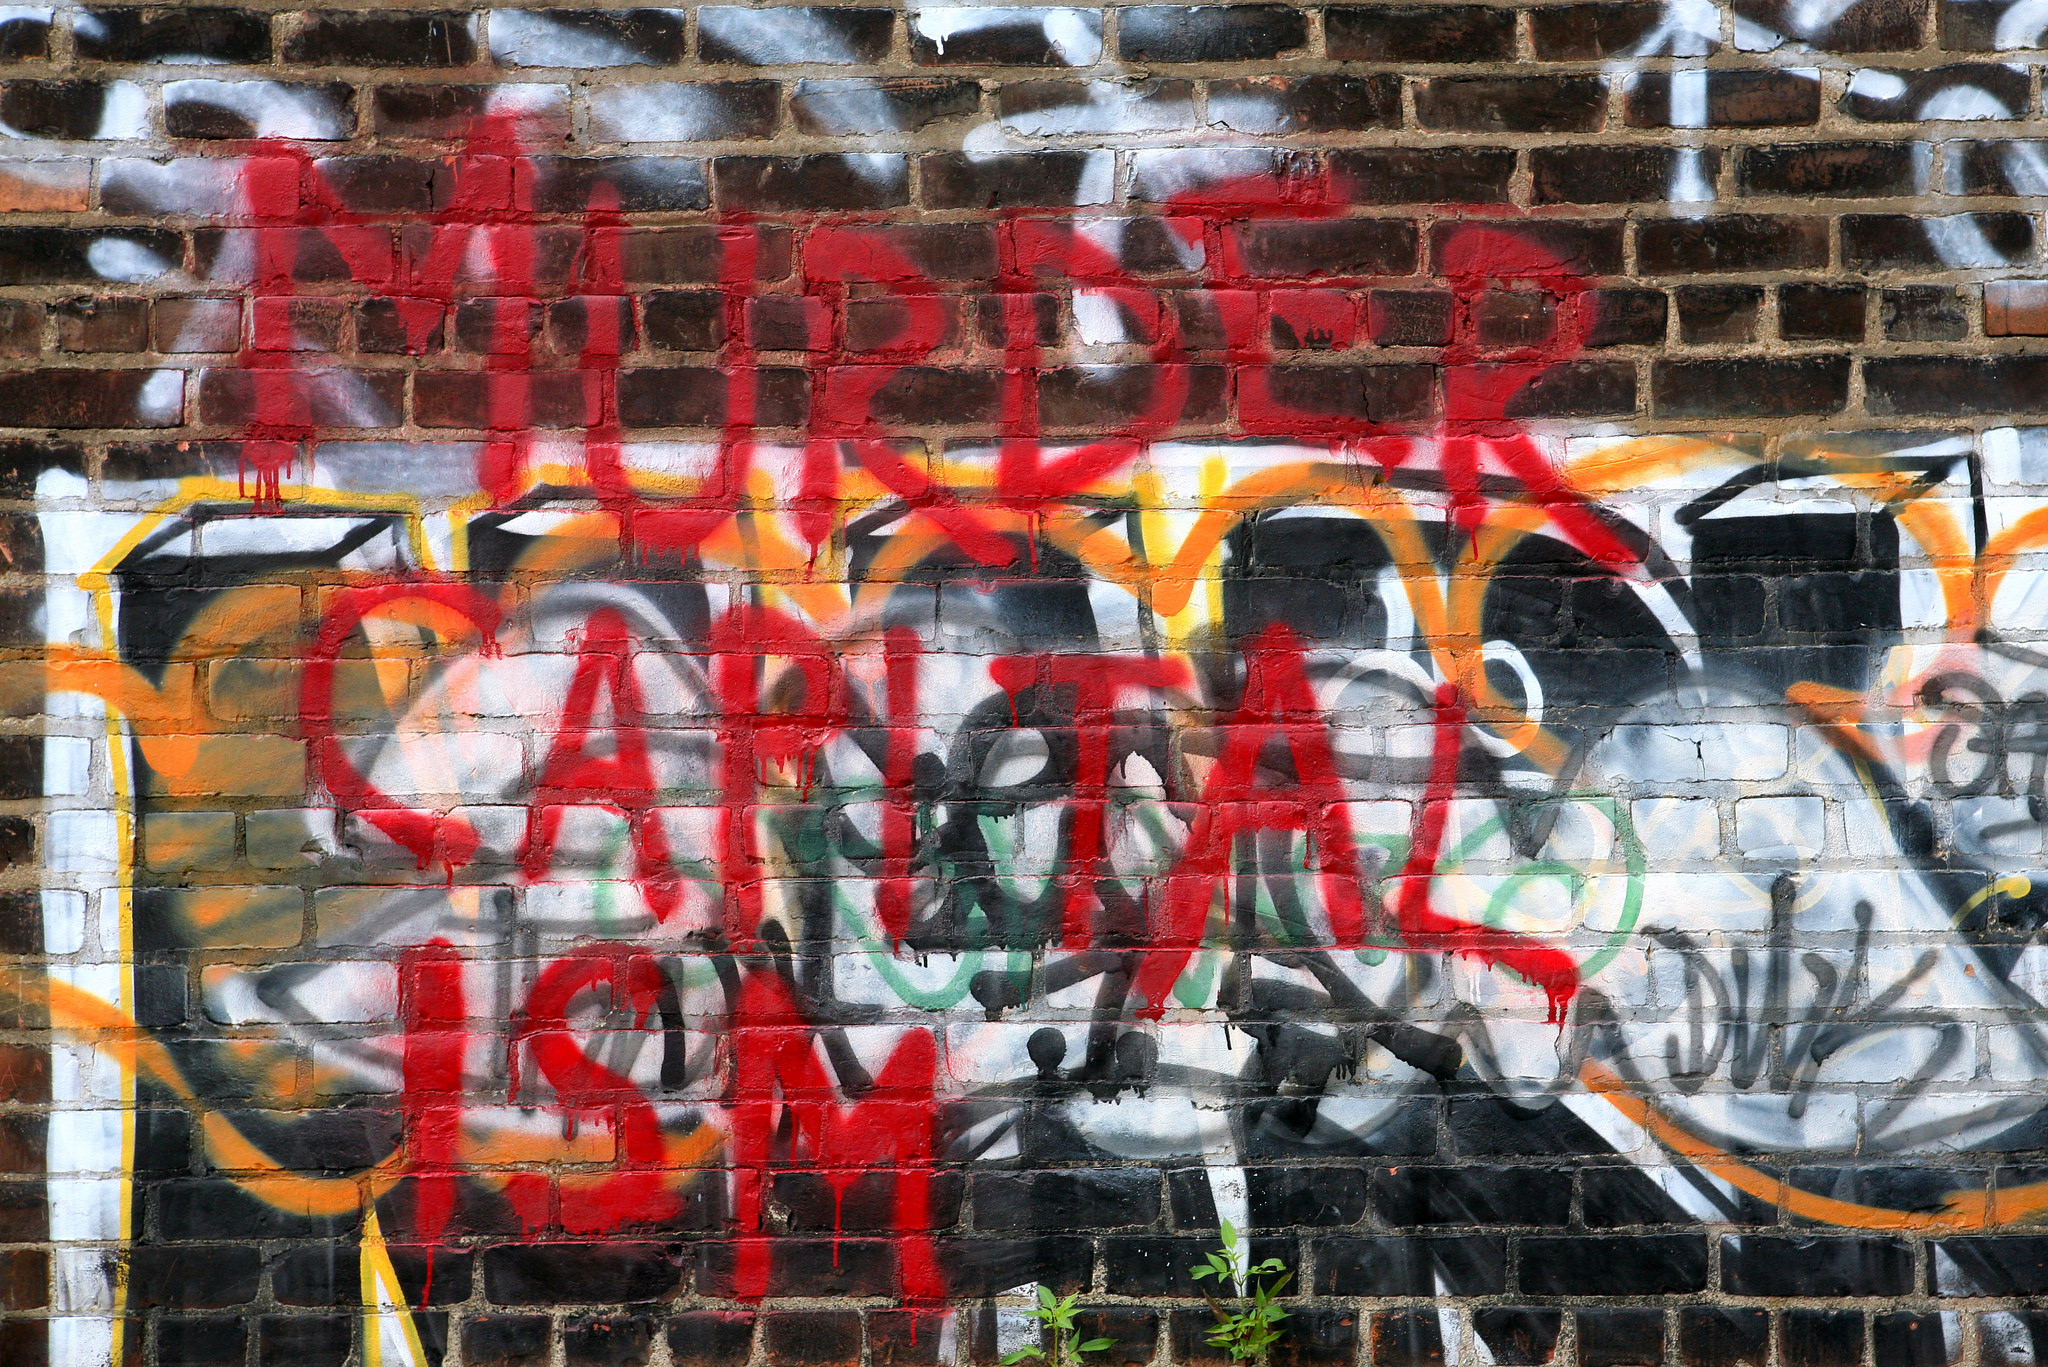 'Murder Capitalism' graffiti